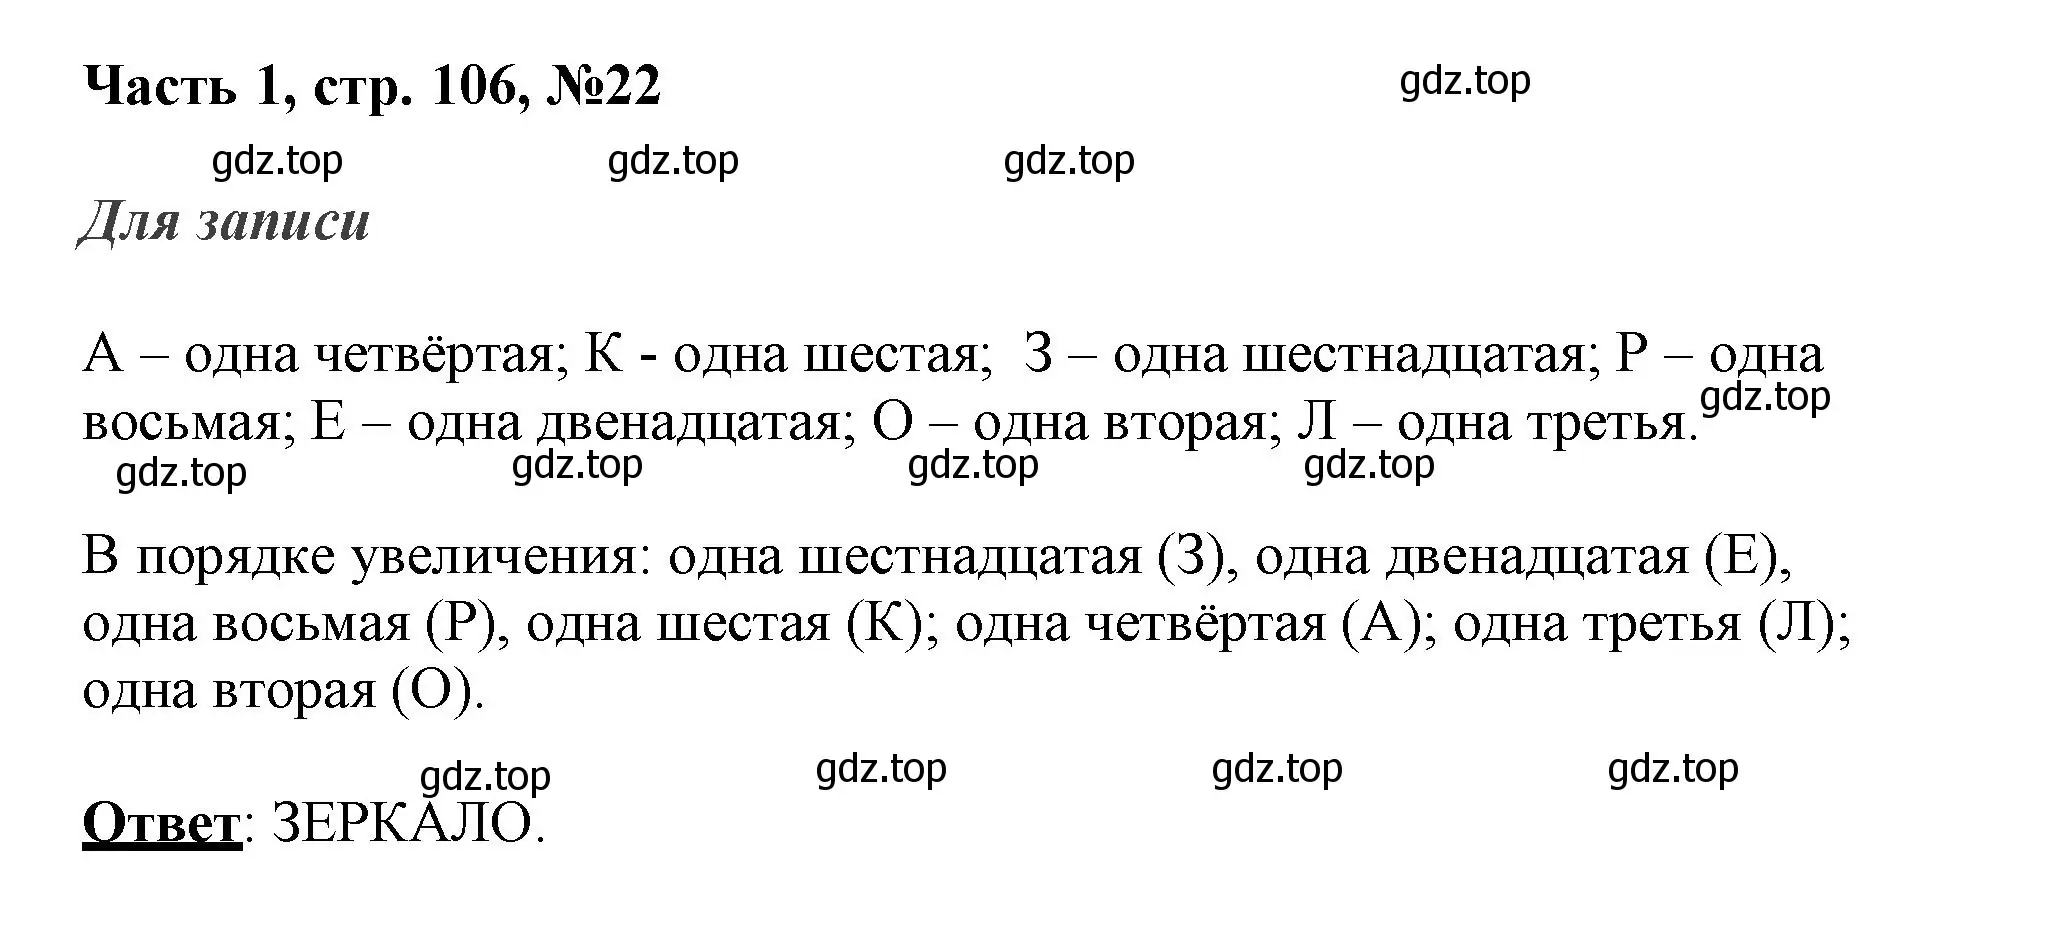 Решение номер 22 (страница 106) гдз по математике 3 класс Моро, Бантова, учебник 1 часть